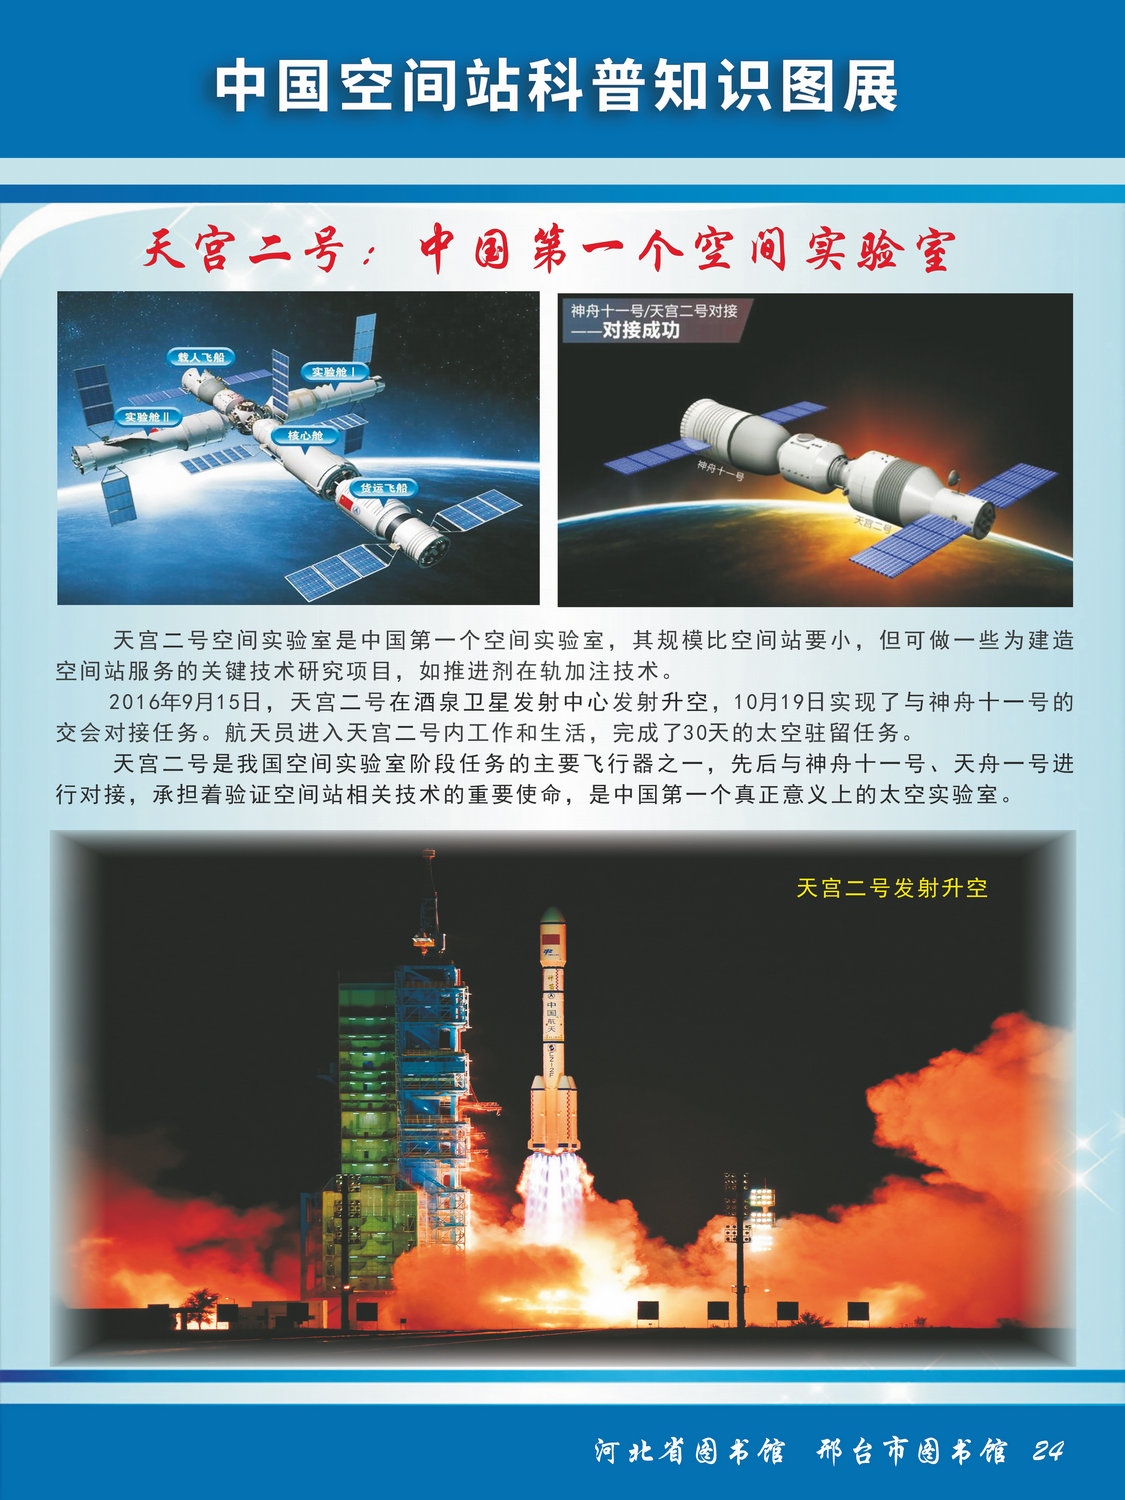 中国空间站科普知识图文展_图24